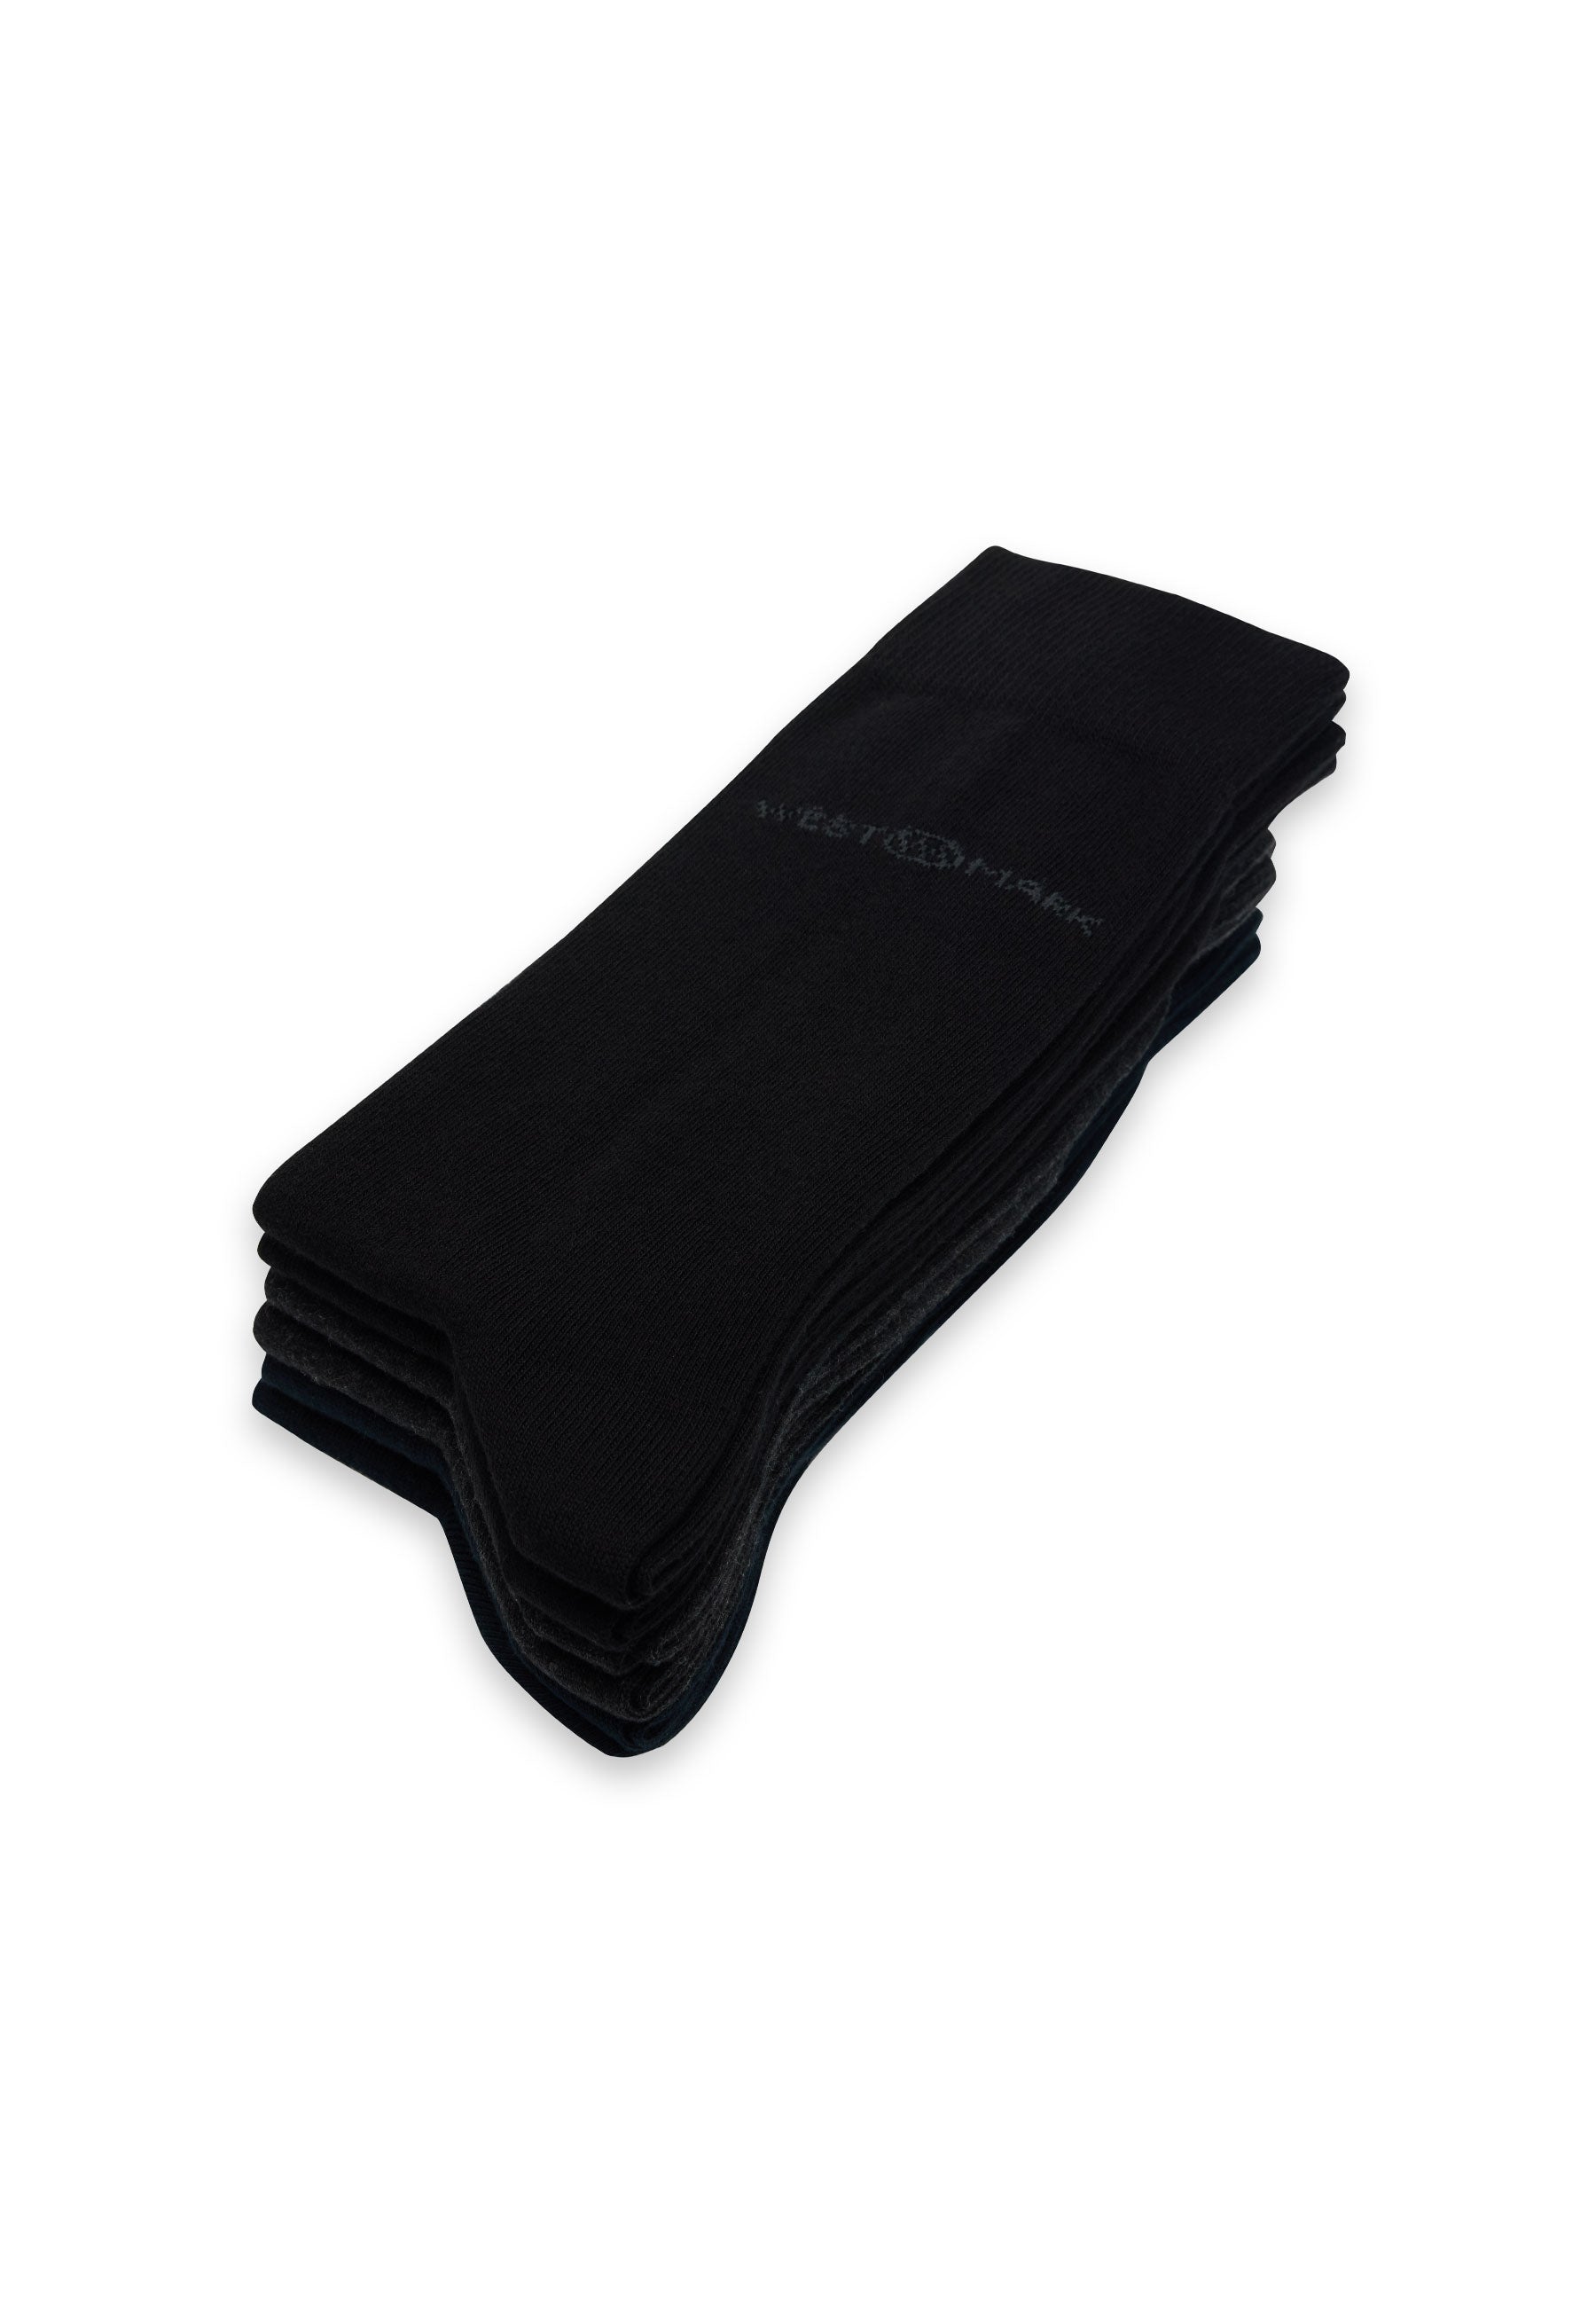 6’lı Siyah Lacivert Antrasit Pamuk Karışımlı Klasik Erkek Çorap Seti CLASSIC BUSINESS - Socks - Westmark London EU(TR) Store Organik Pamuklu Sürdürülebilir Moda